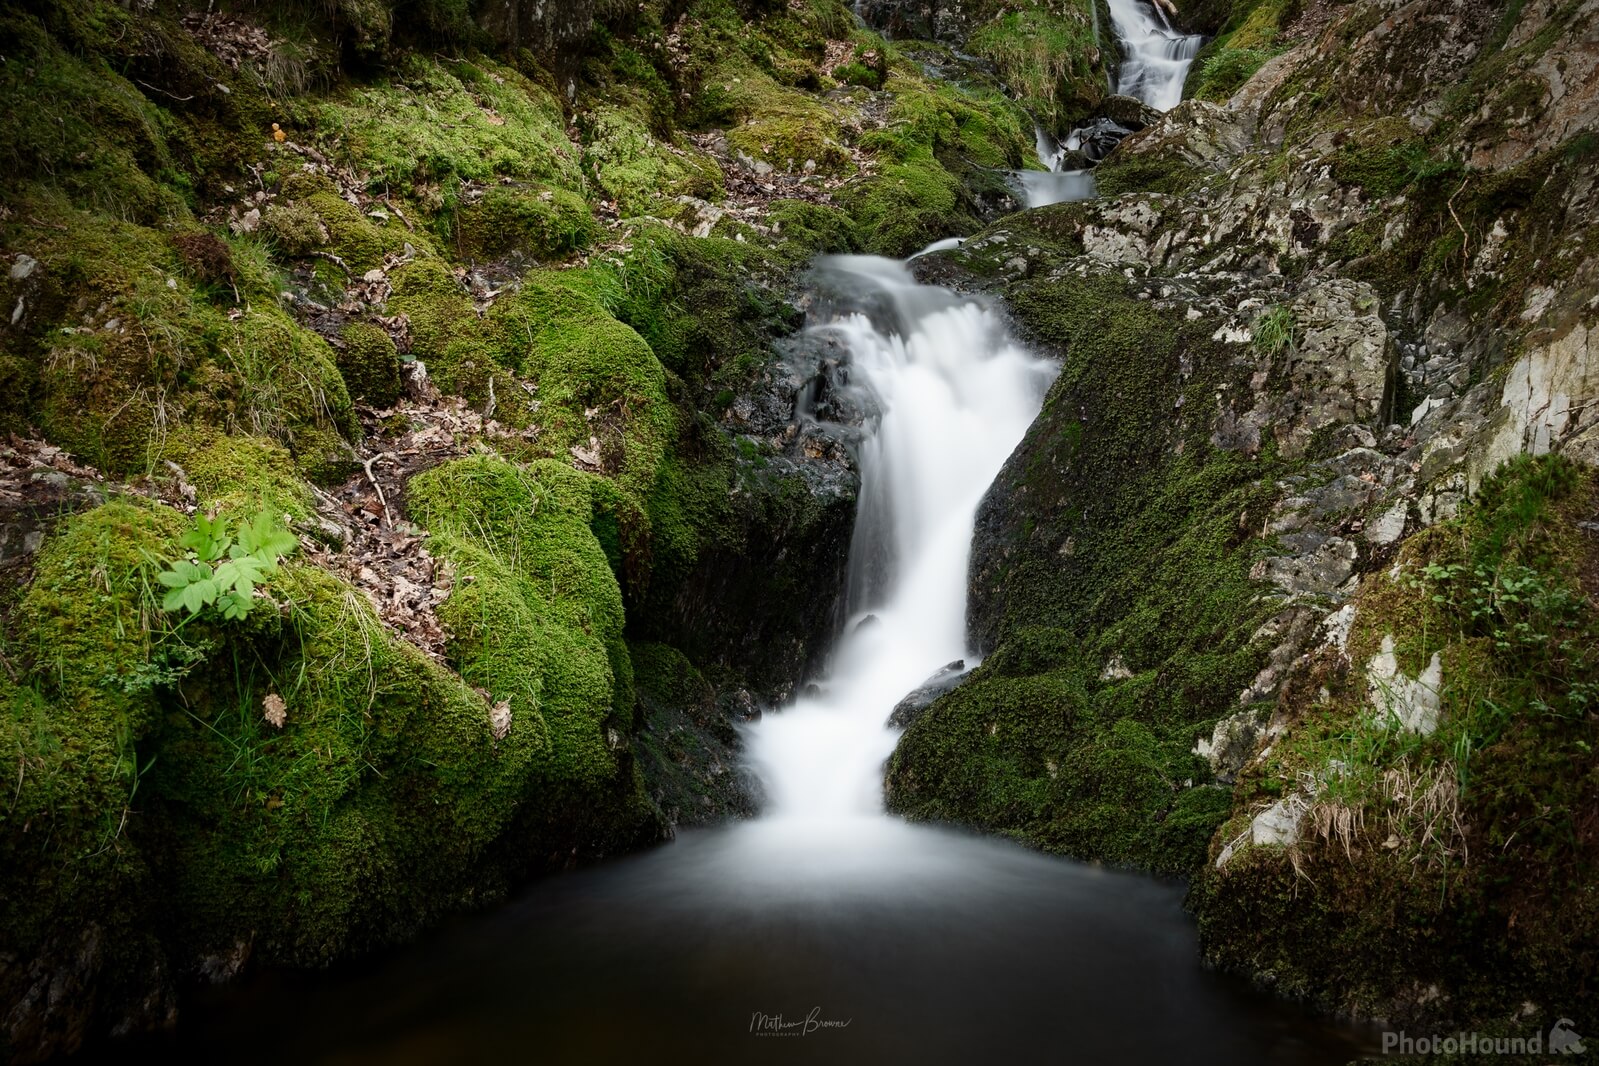 Image of Elan Valley Waterfall by Mathew Browne